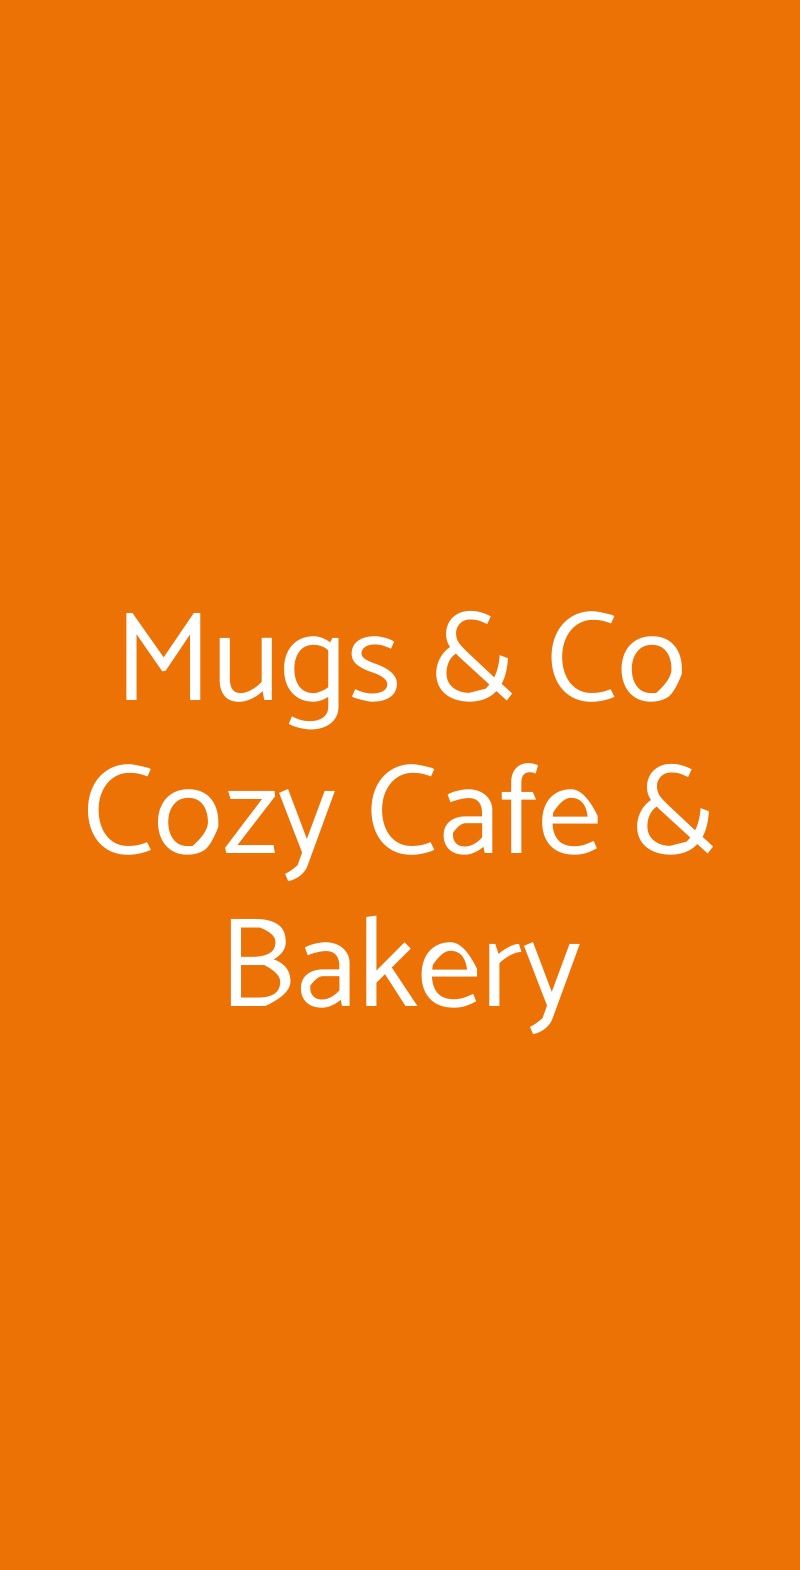 Mugs & Co Cozy Cafe & Bakery Milano menù 1 pagina